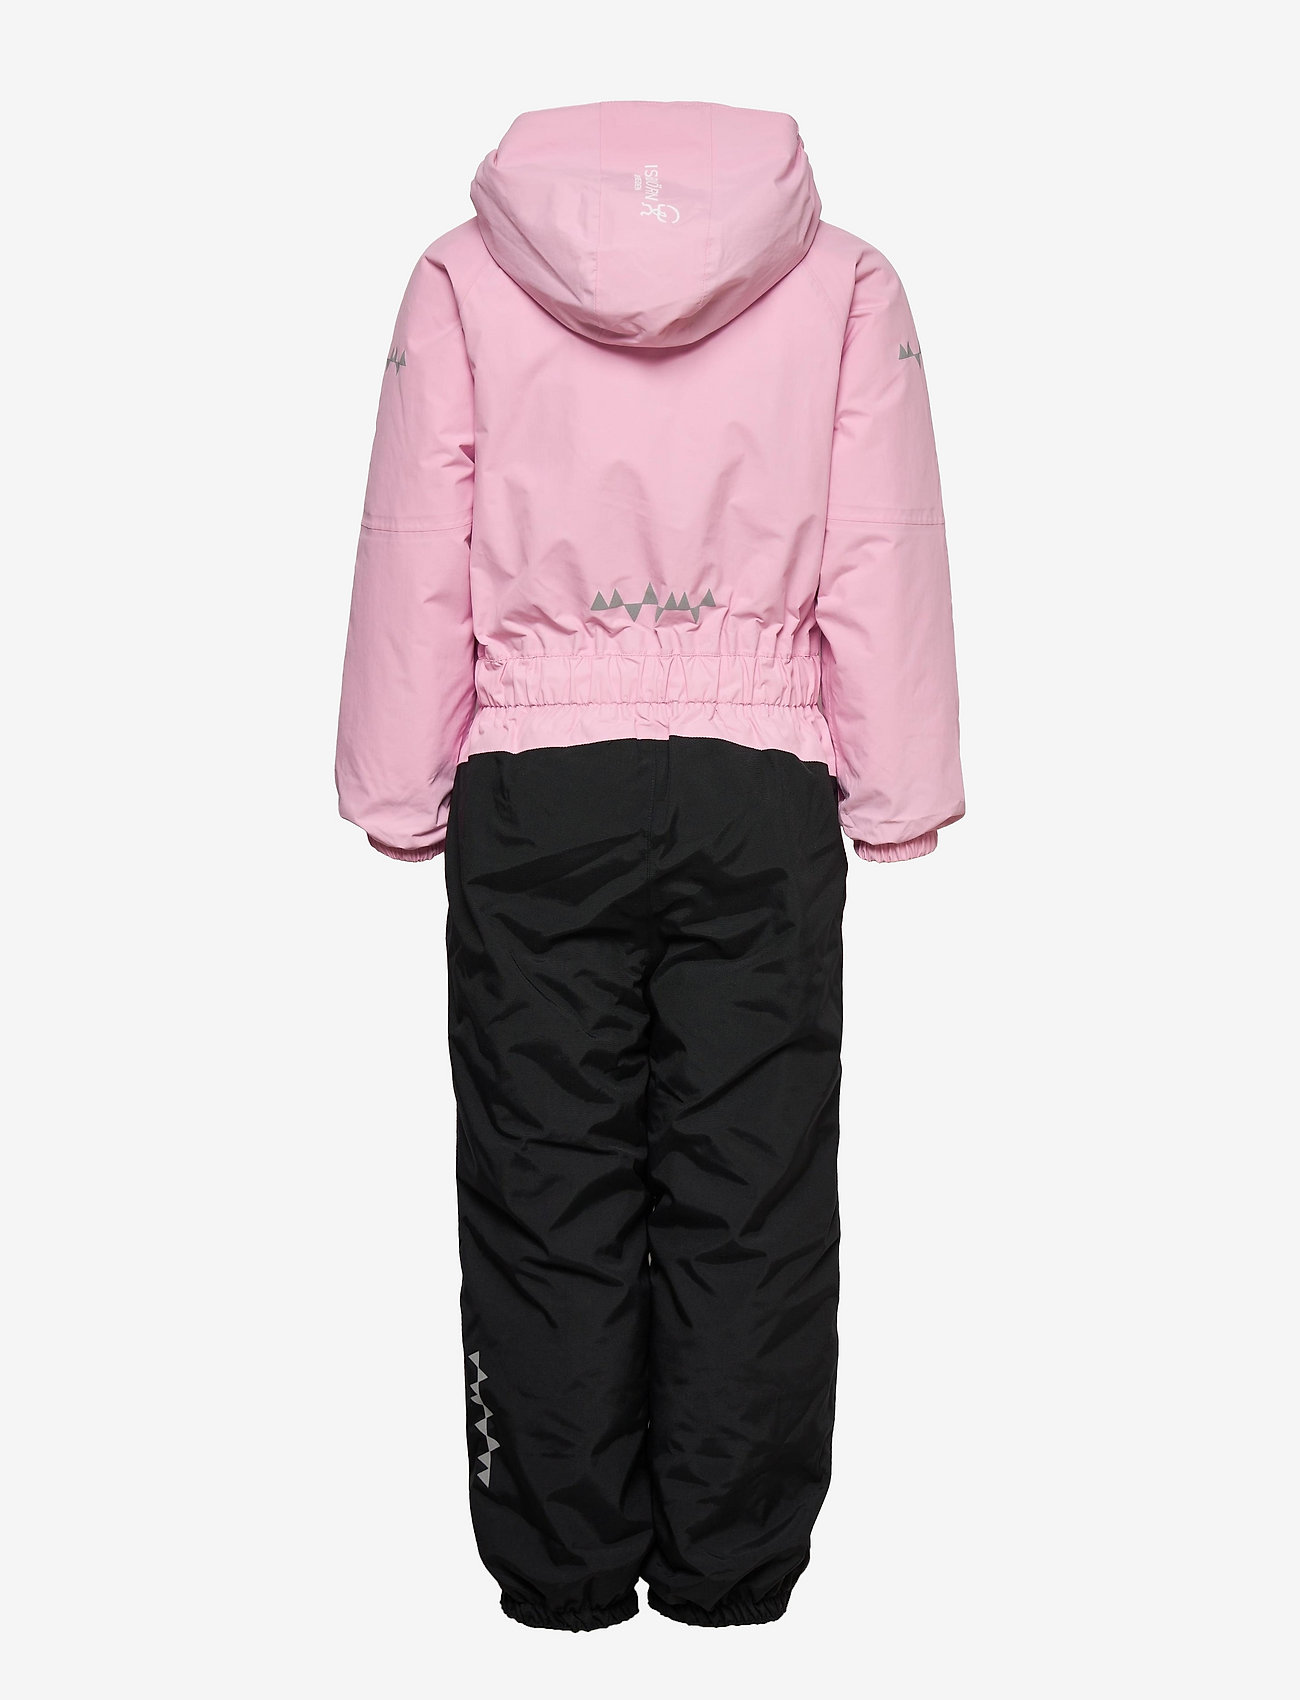 ISBJÖRN of Sweden - PENGUIN Snowsuit Kids - outerwear - frostpink - 1